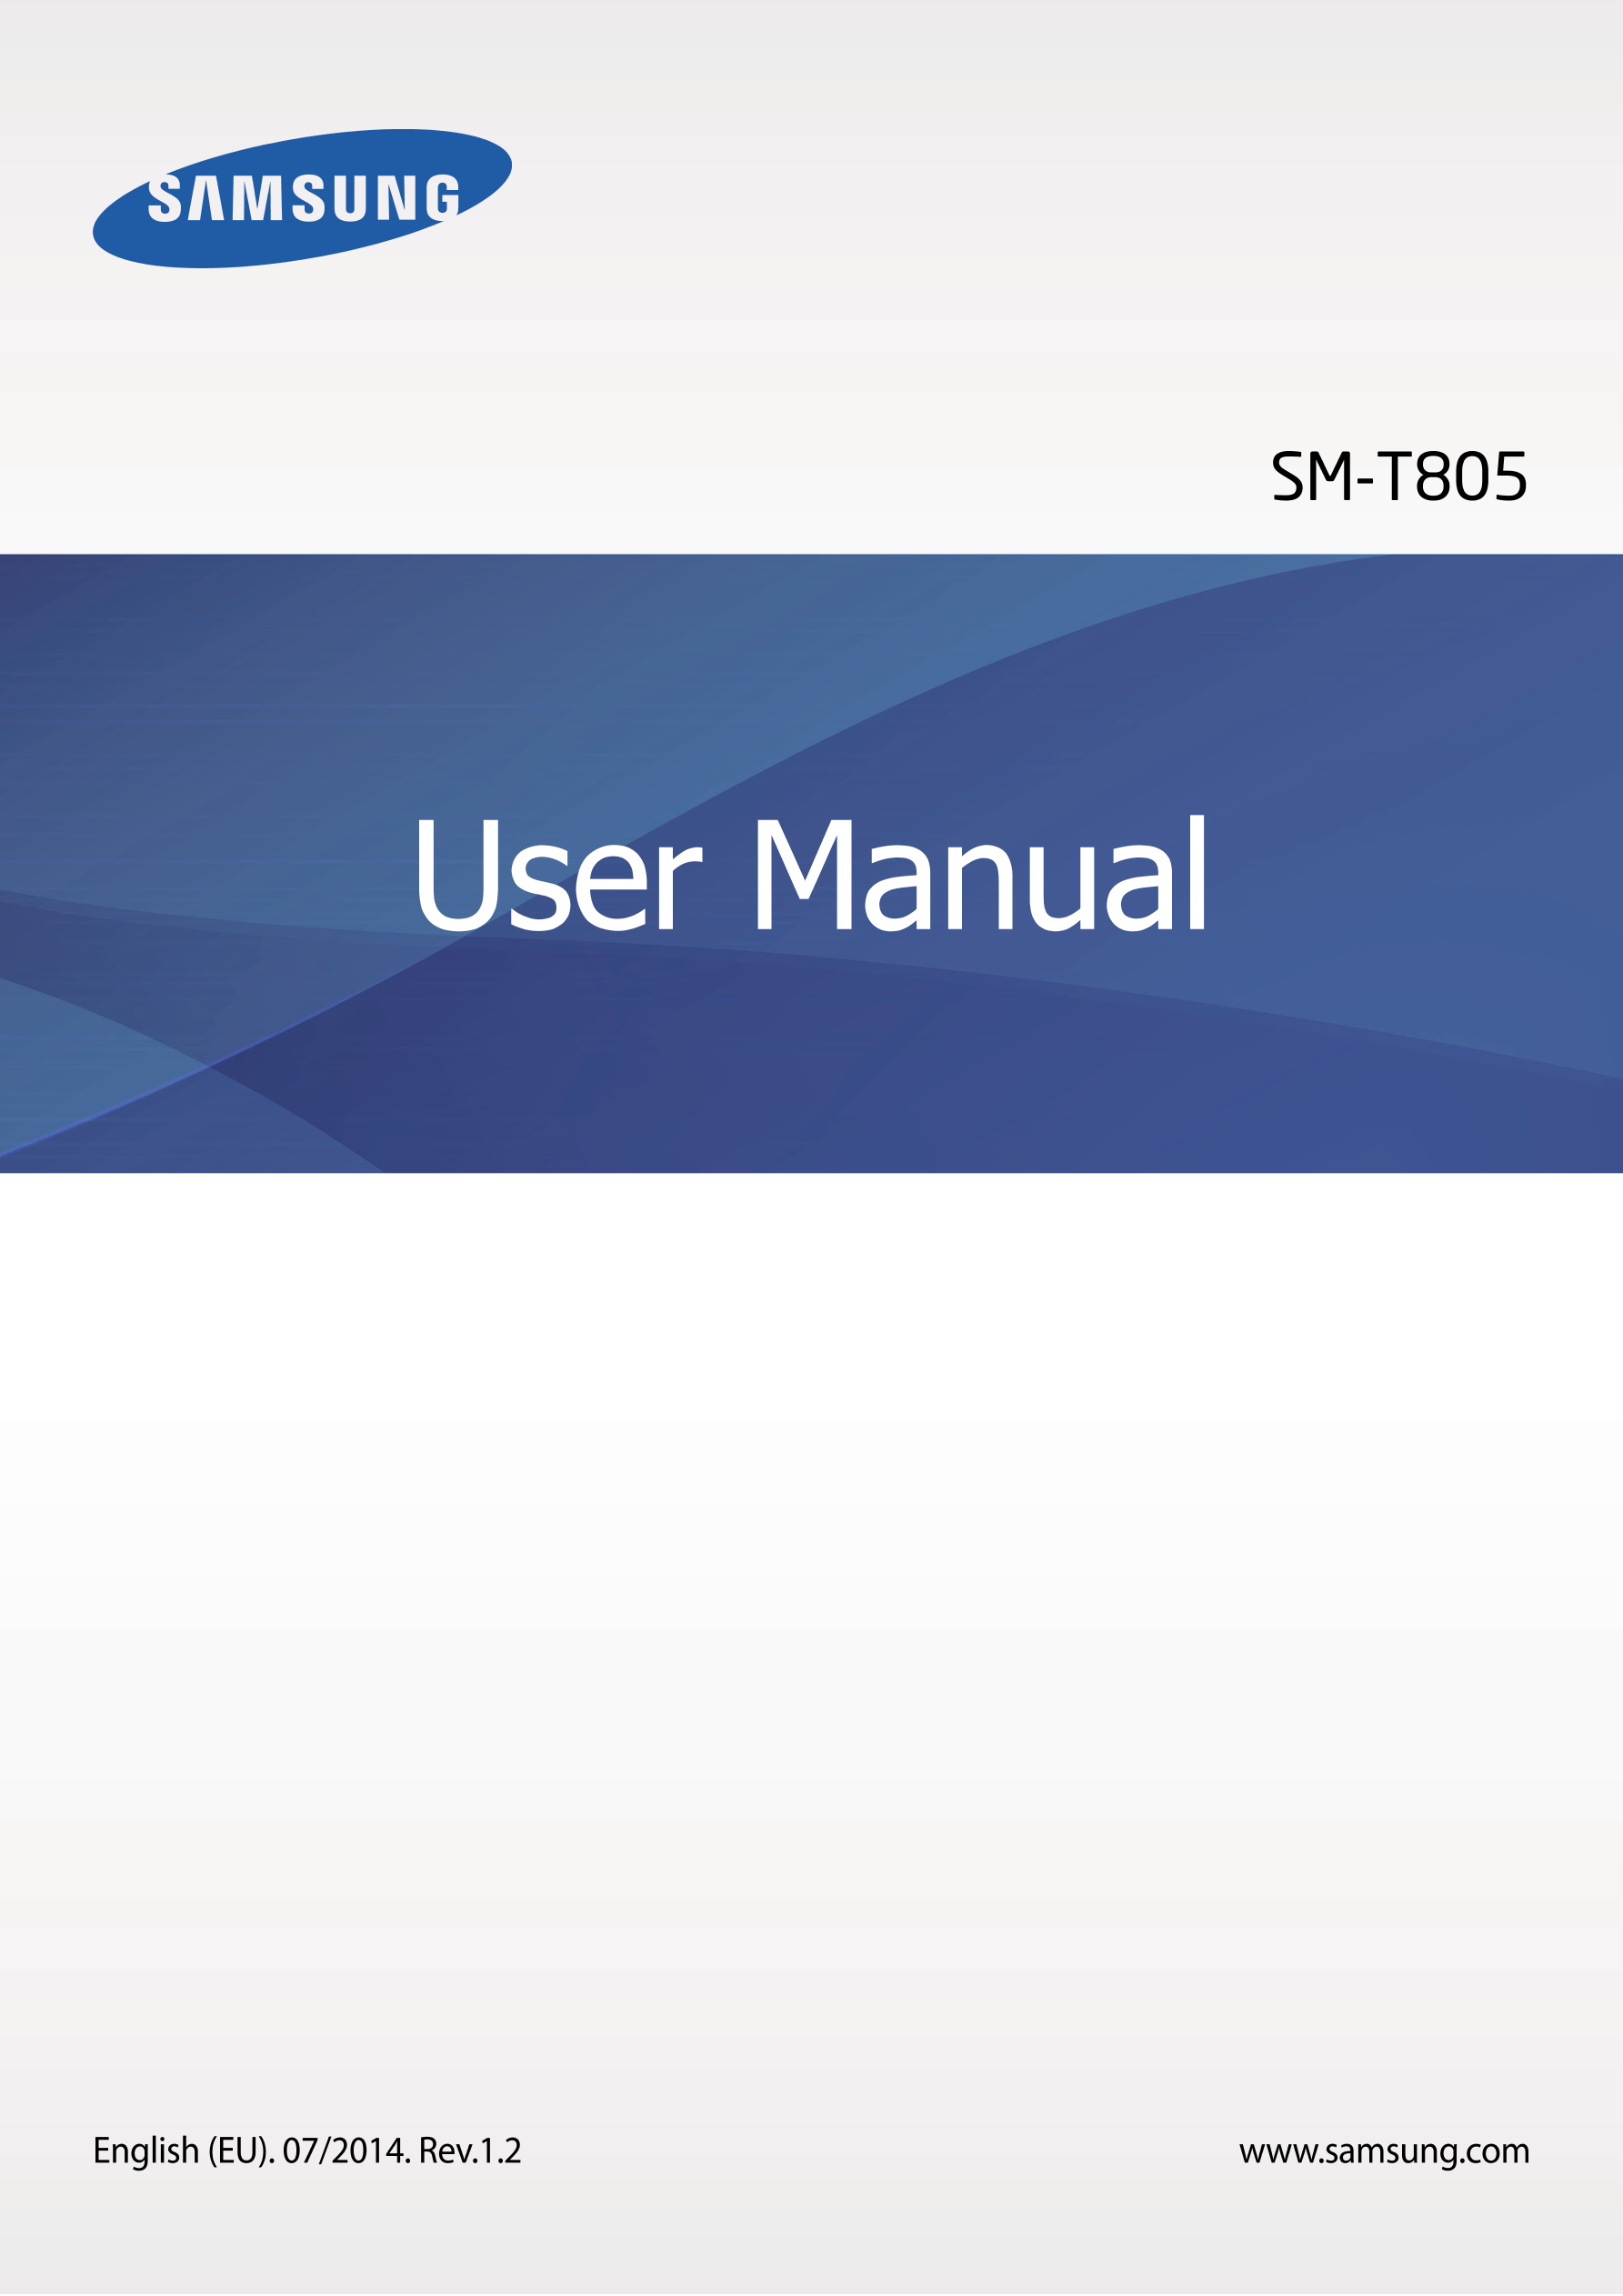 SM-T805
User Manual
English (EU). 07/2014. Rev.1.2 www.samsung.com